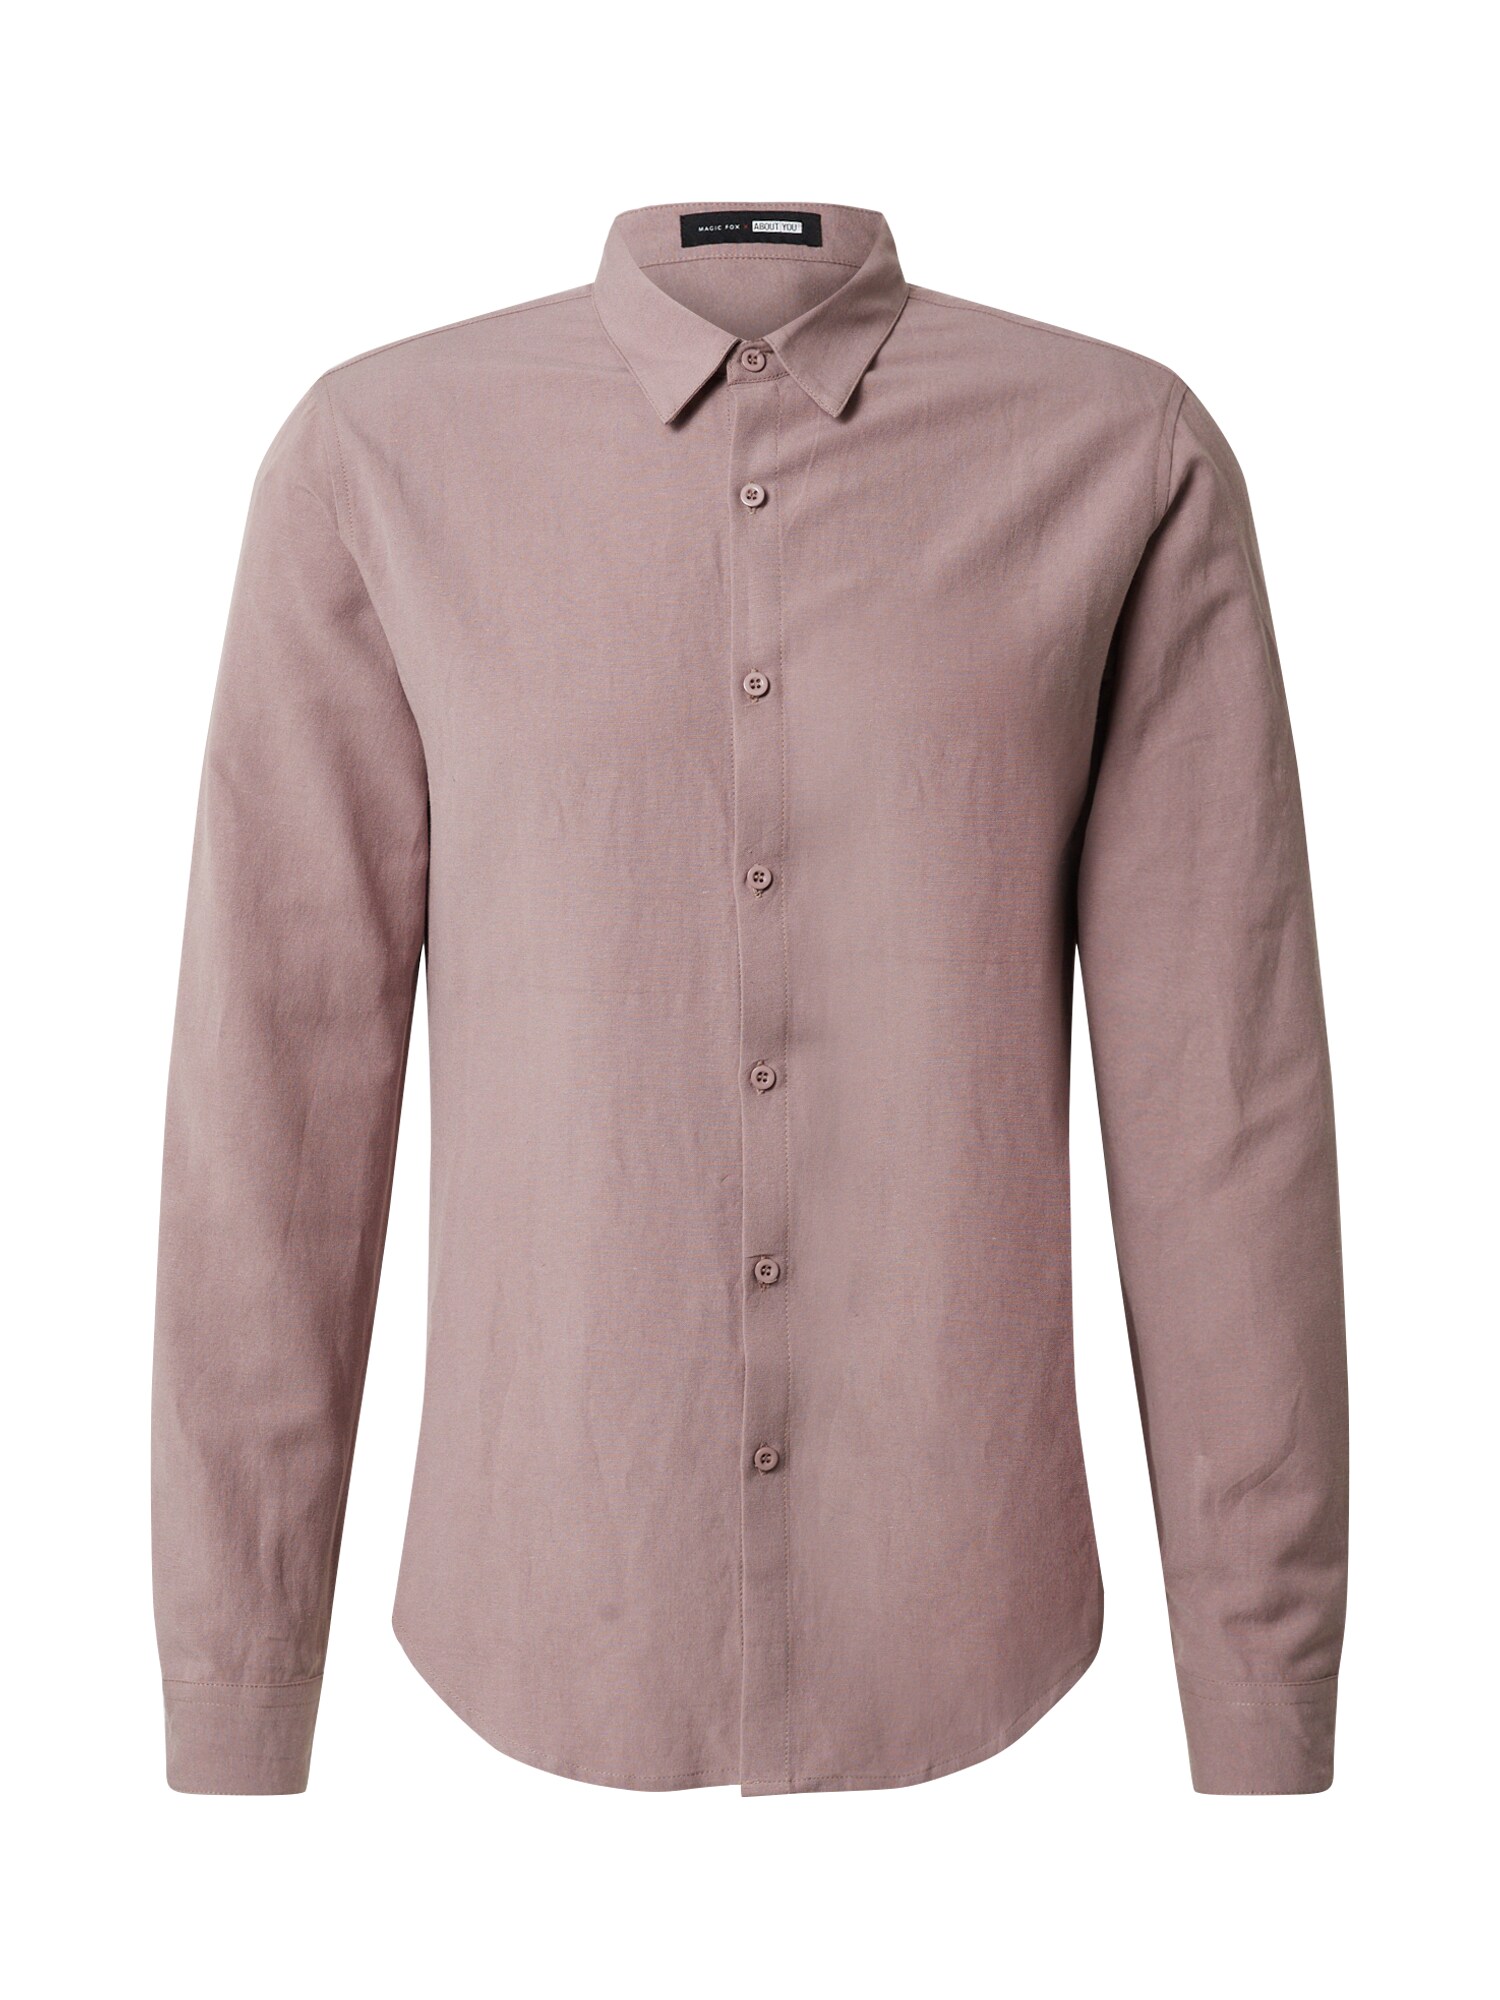 DAN FOX APPAREL Dalykiniai marškiniai 'Lewis'  ryškiai rožinė spalva